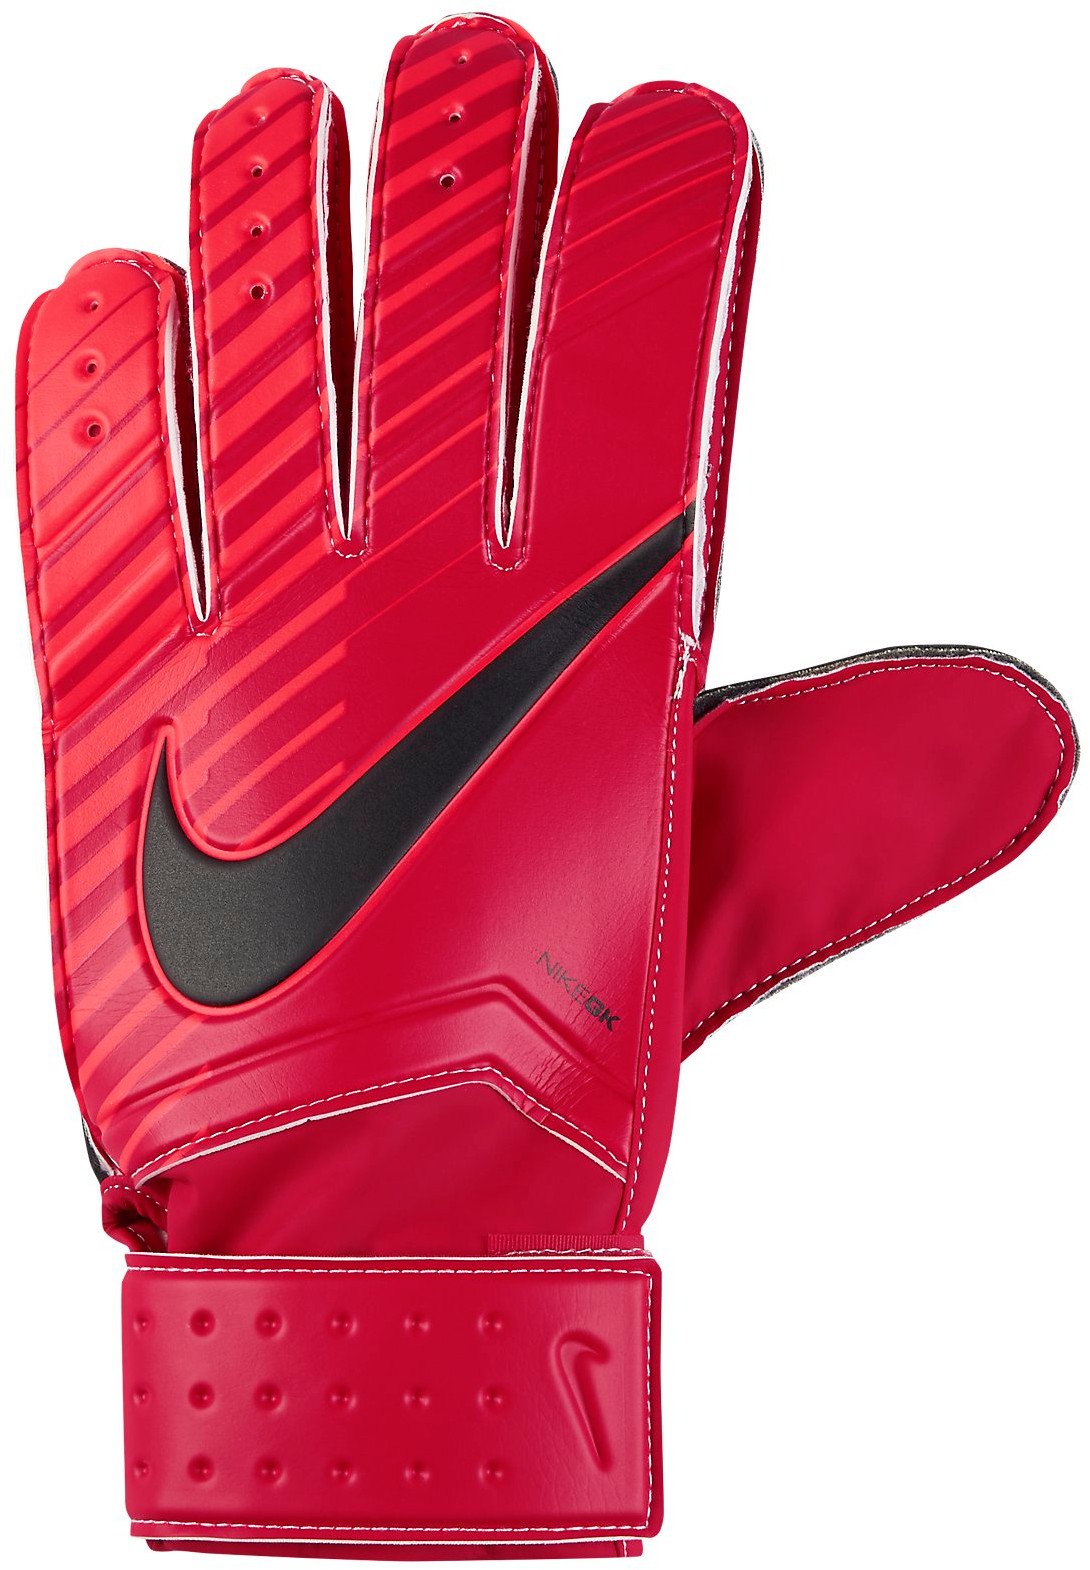 Brankářské rukavice Nike GK Match